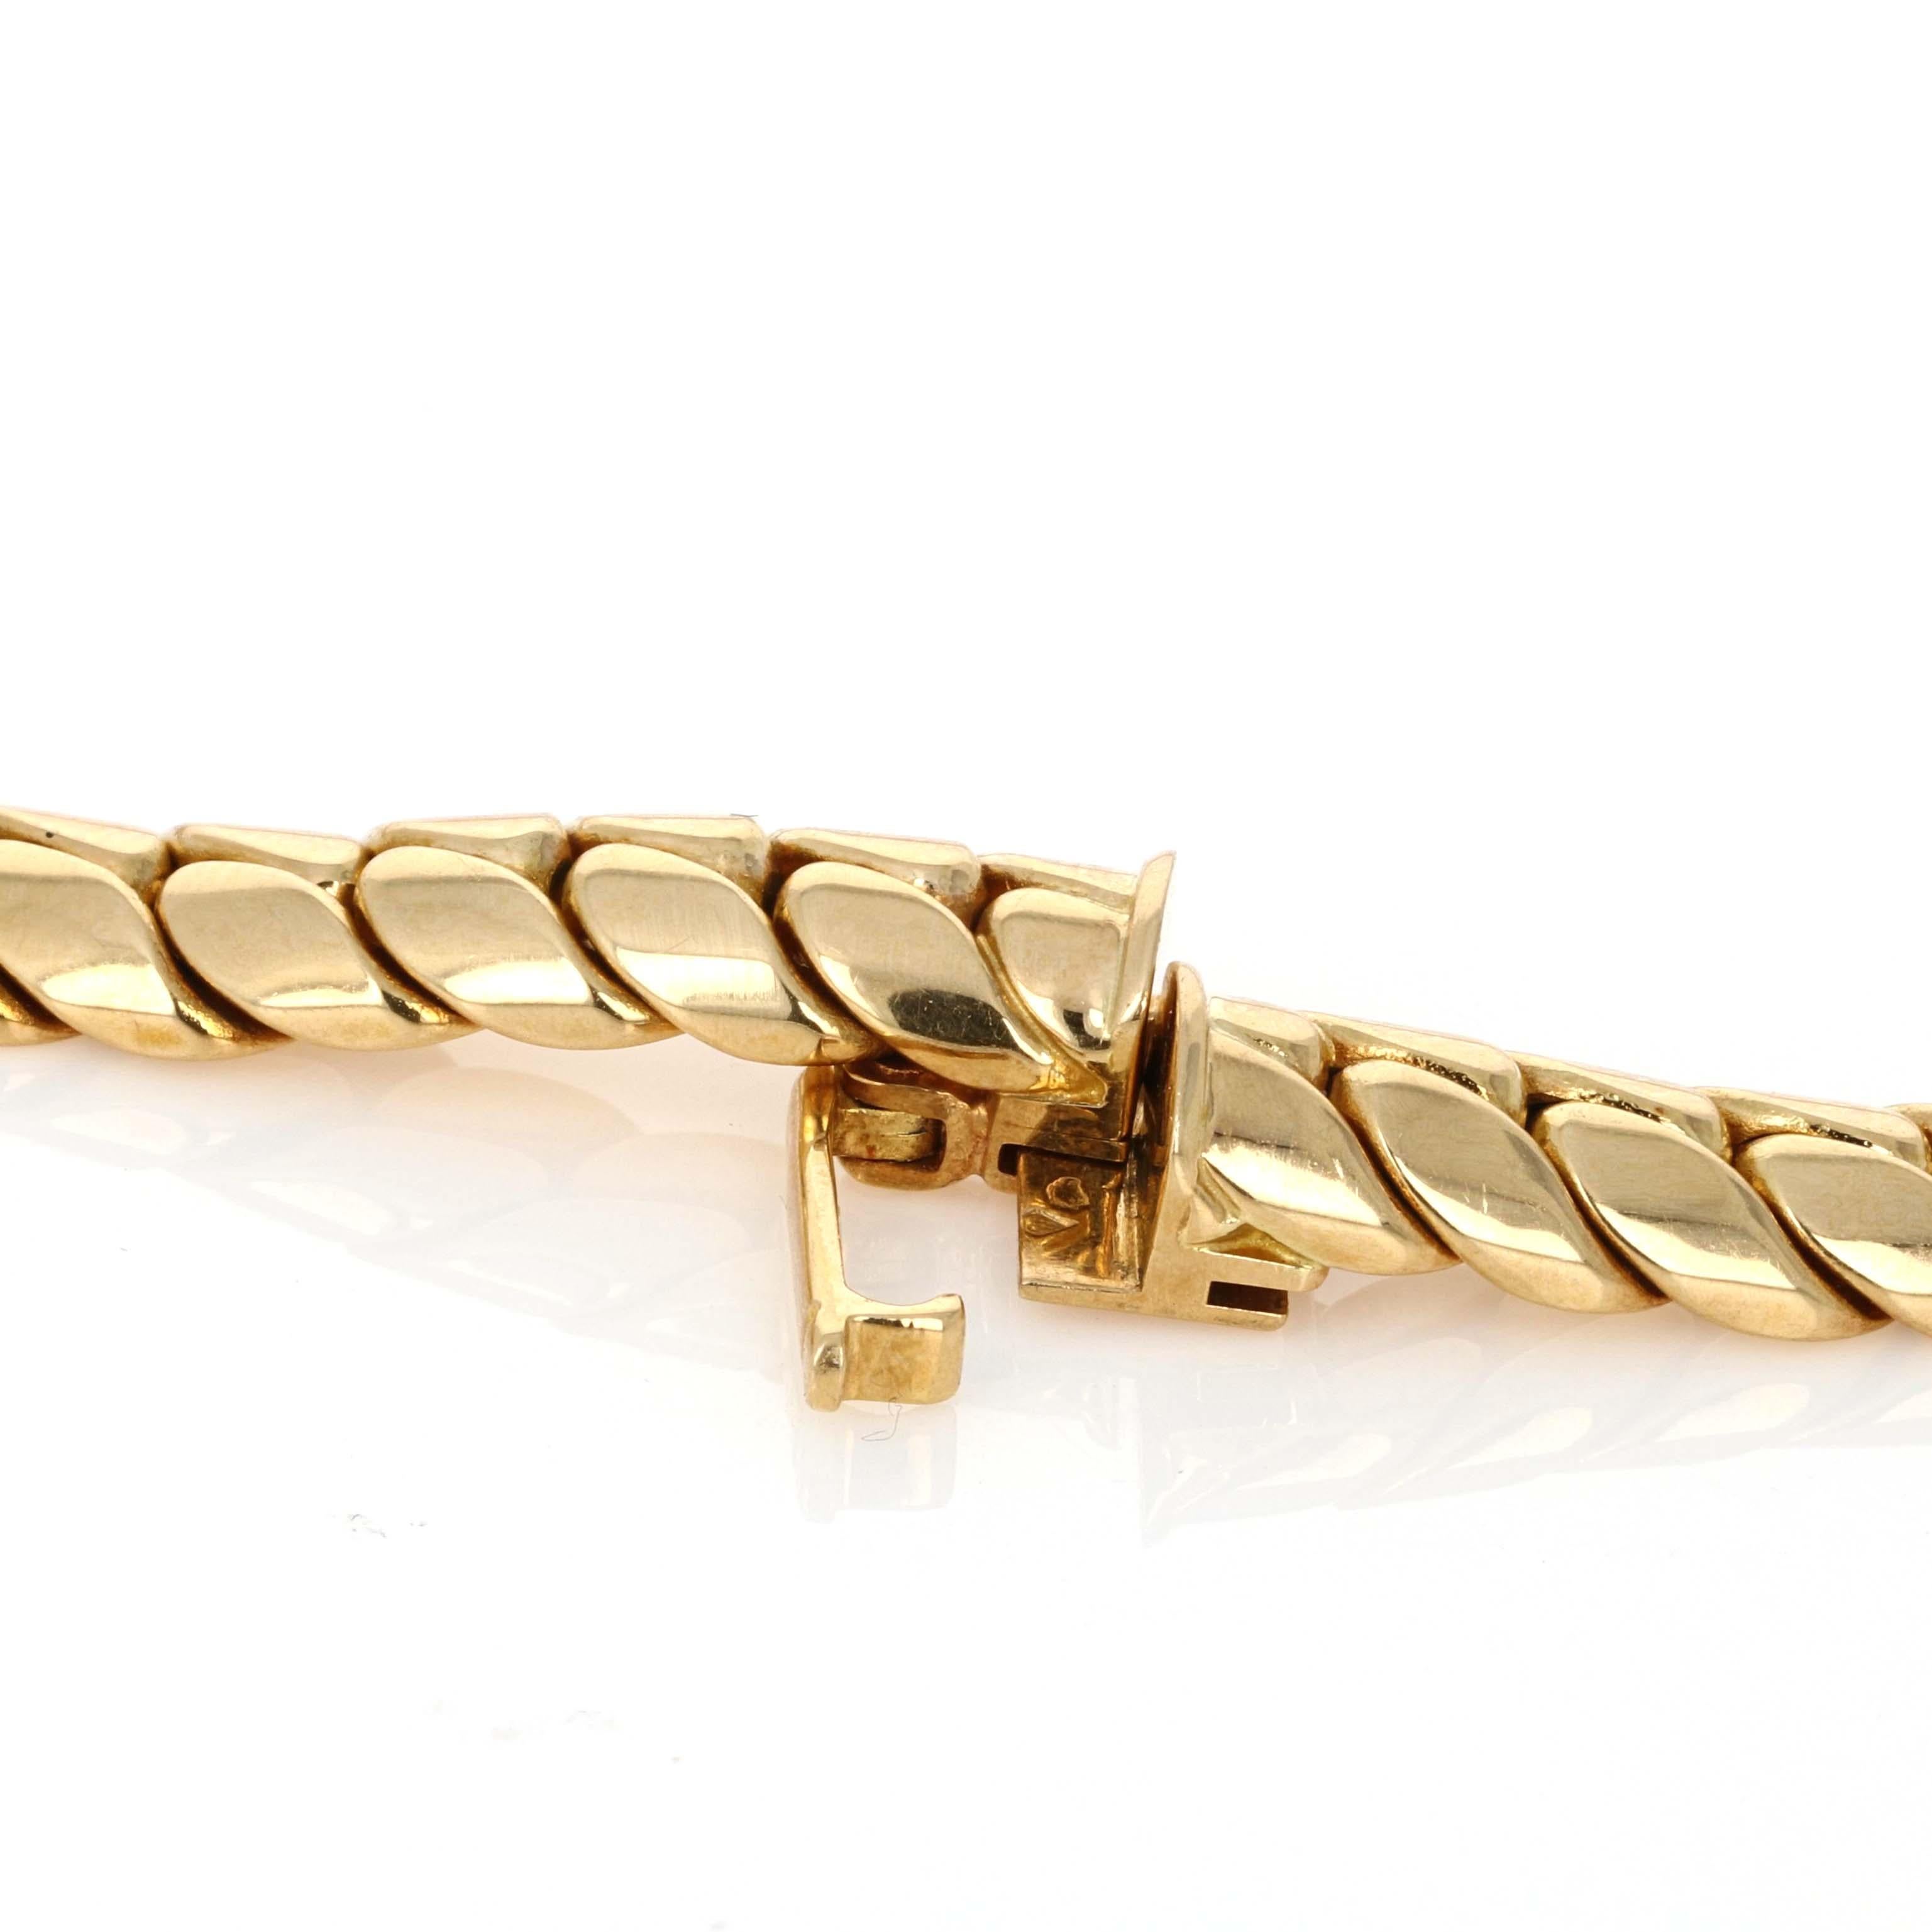 Van Cleef & Arpels, Original Retro-Halskette aus 18 Karat Gelbgold mit Diamanten. Die Halskette ist aus den 1980er Jahren mit einem englischen Link/  Fischgrätenkette und Diamantmotiv in der Mitte.
In der Mitte befinden sich 28 runde Diamanten im